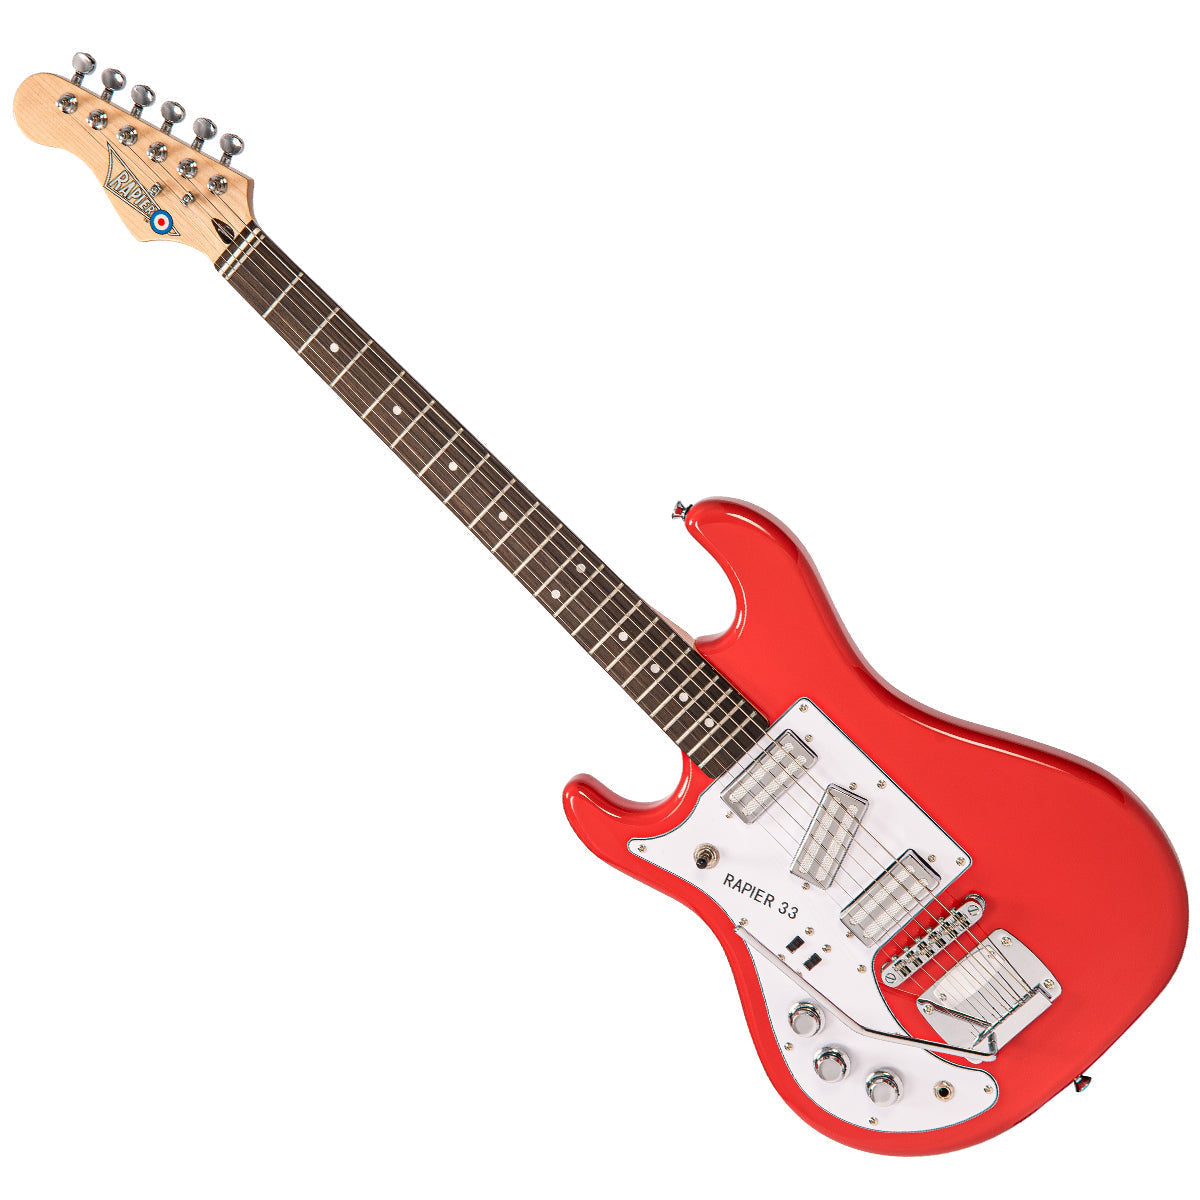 Rapier 33 Electric Guitar ~ Left Handed Fiesta Red, Electric Guitar for sale at Richards Guitars.